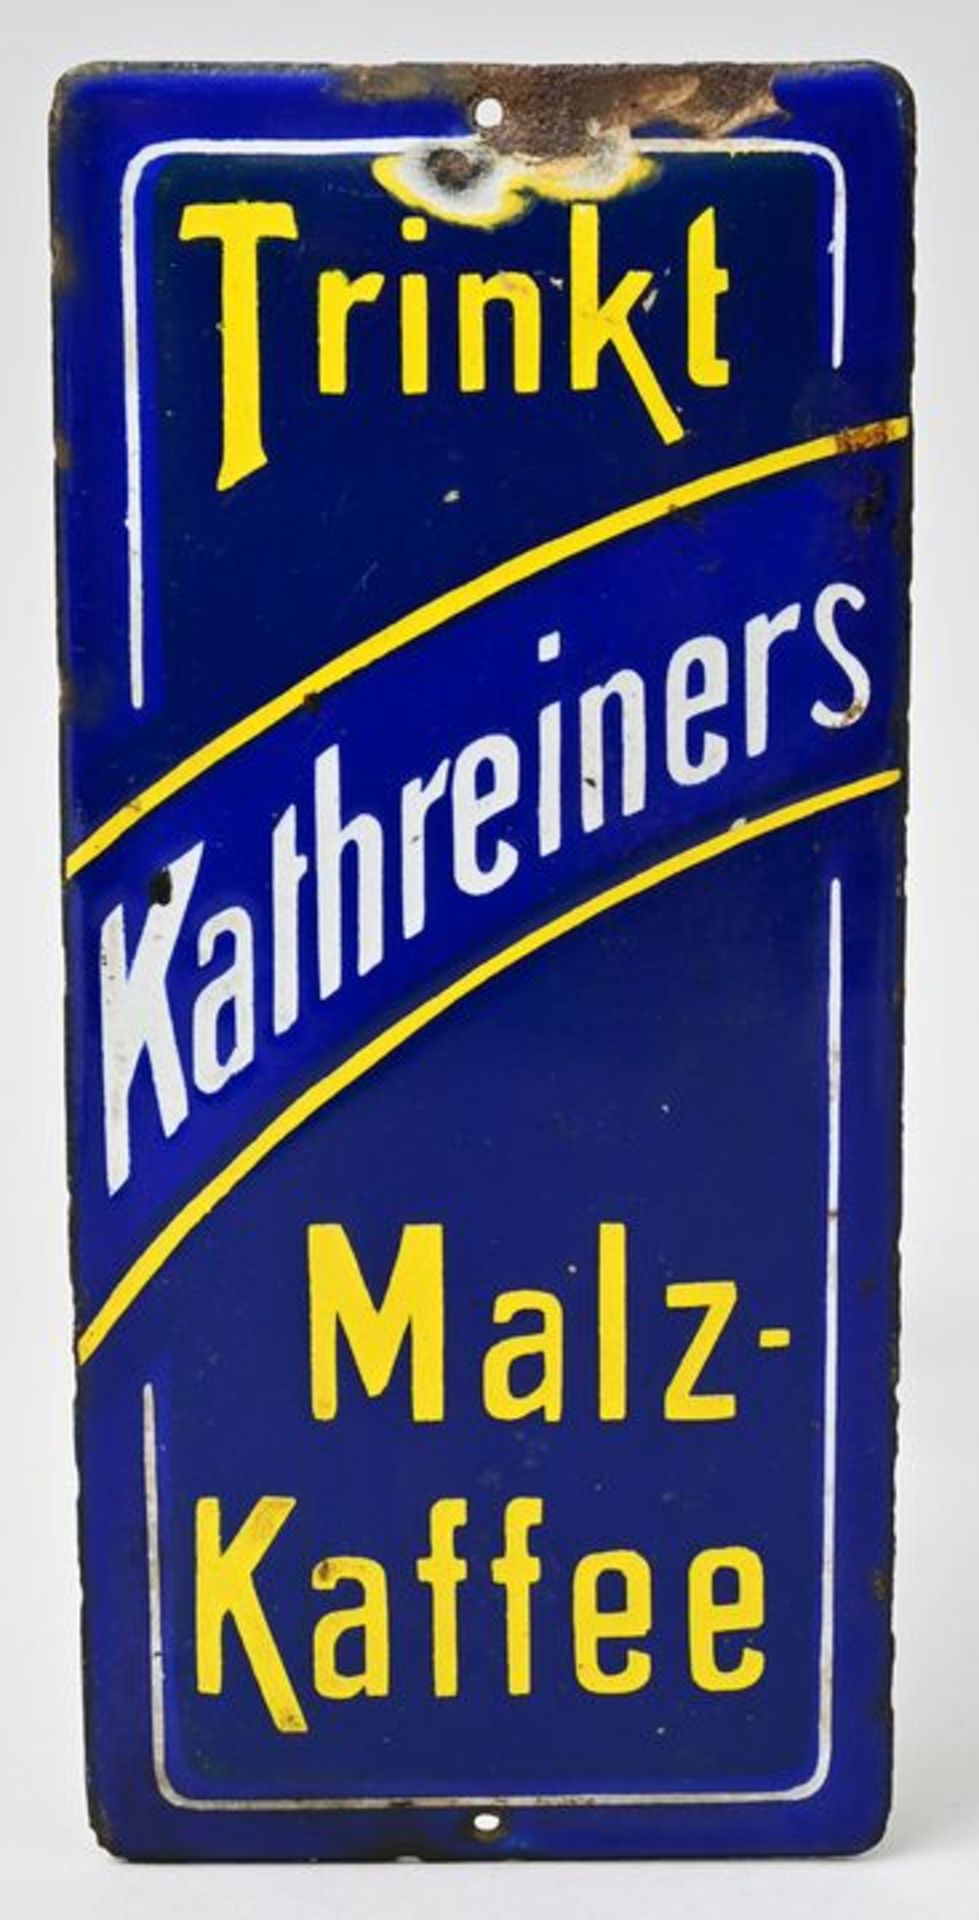 Emailleschild Kathreiners Malz-Kaffee / Enemal sign